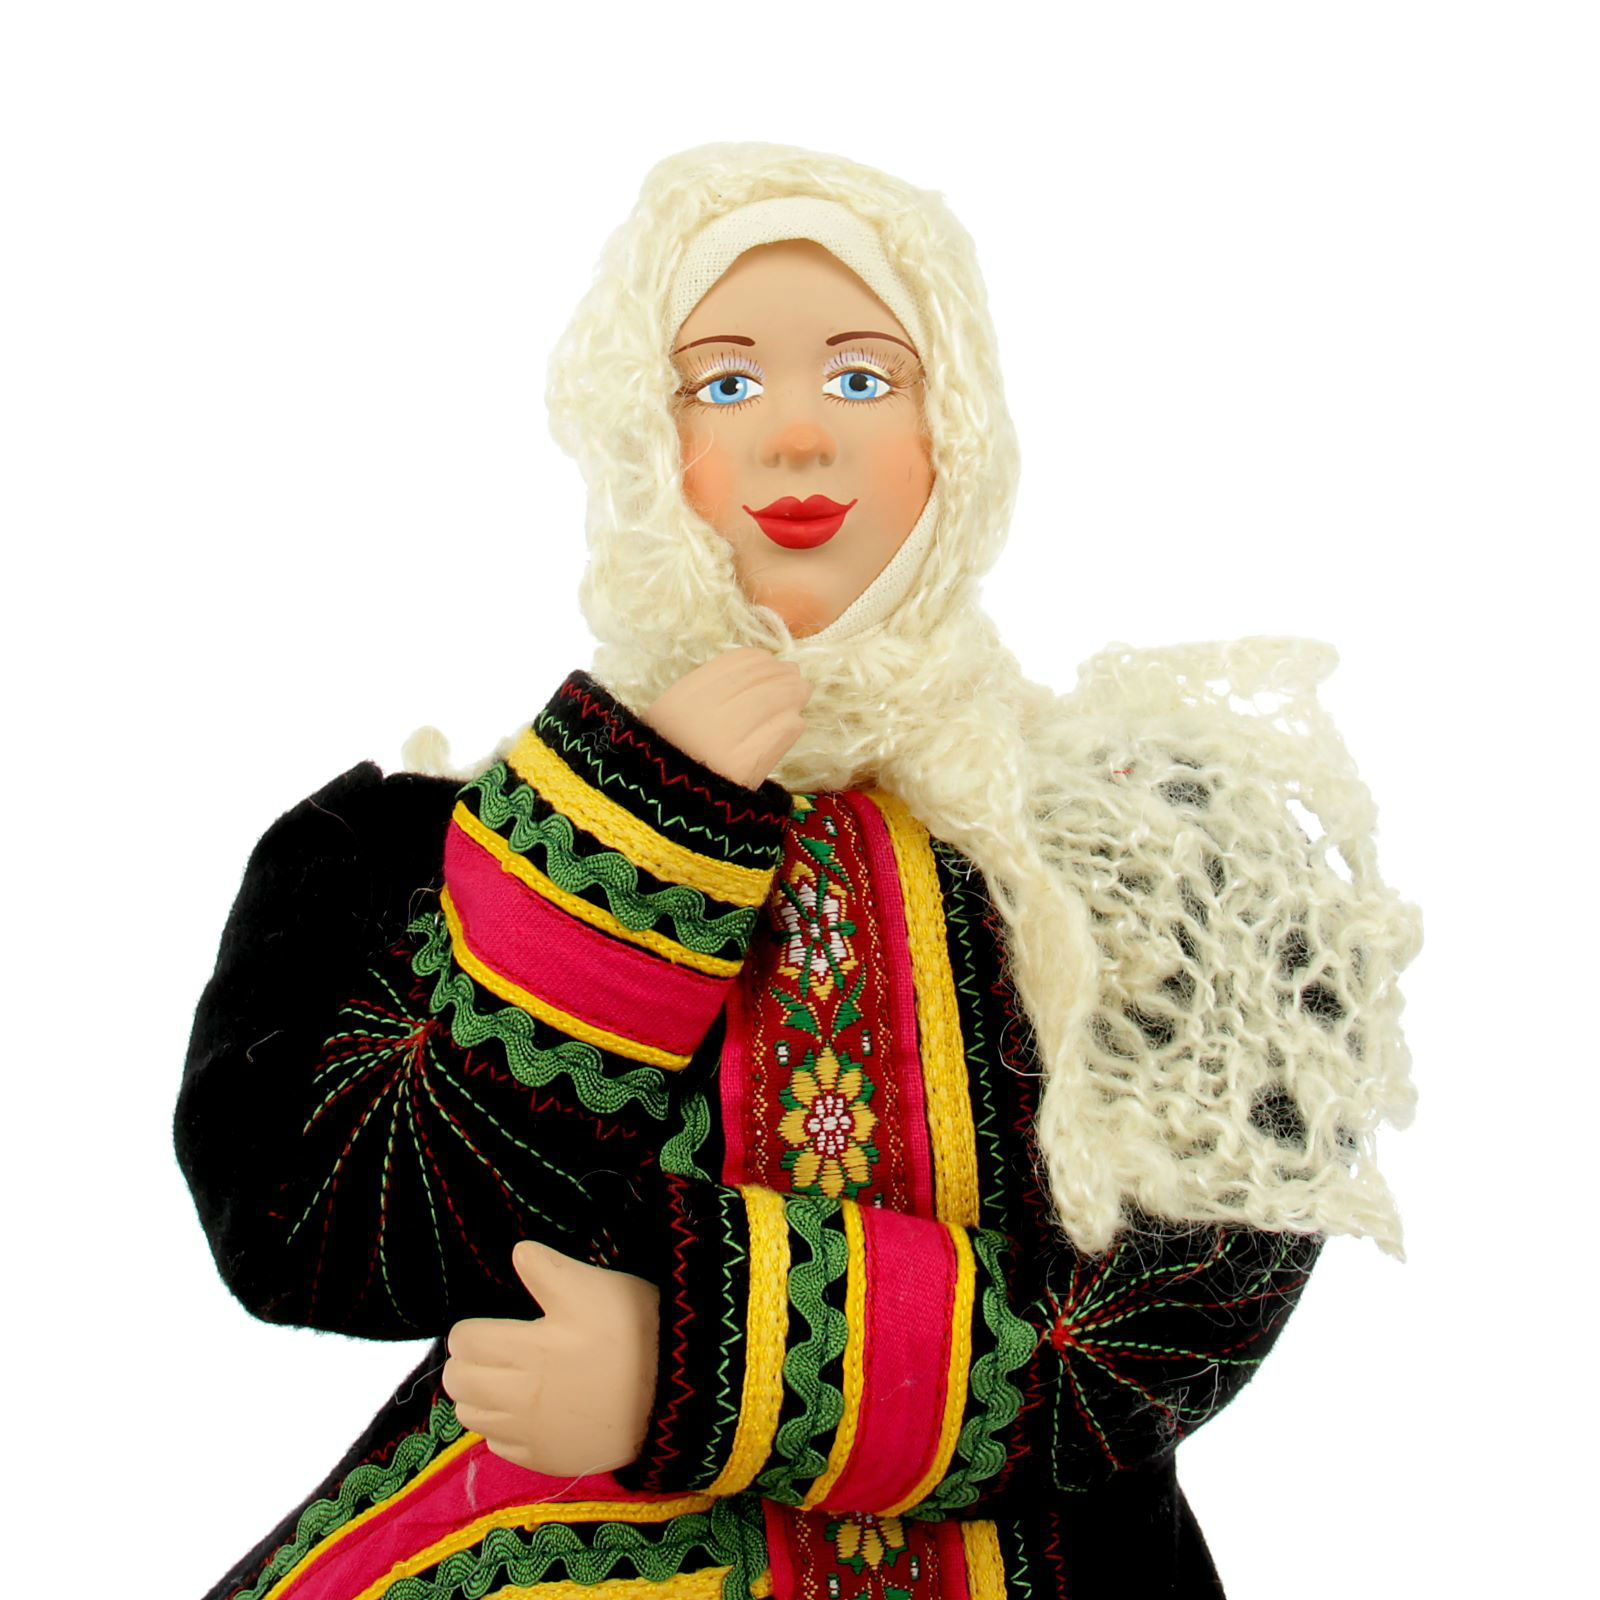 Купить куклу даму. Сувенирные куклы. Кукла в Воронежском костюме. Женщина кукла. Подарочные куклы для женщин.